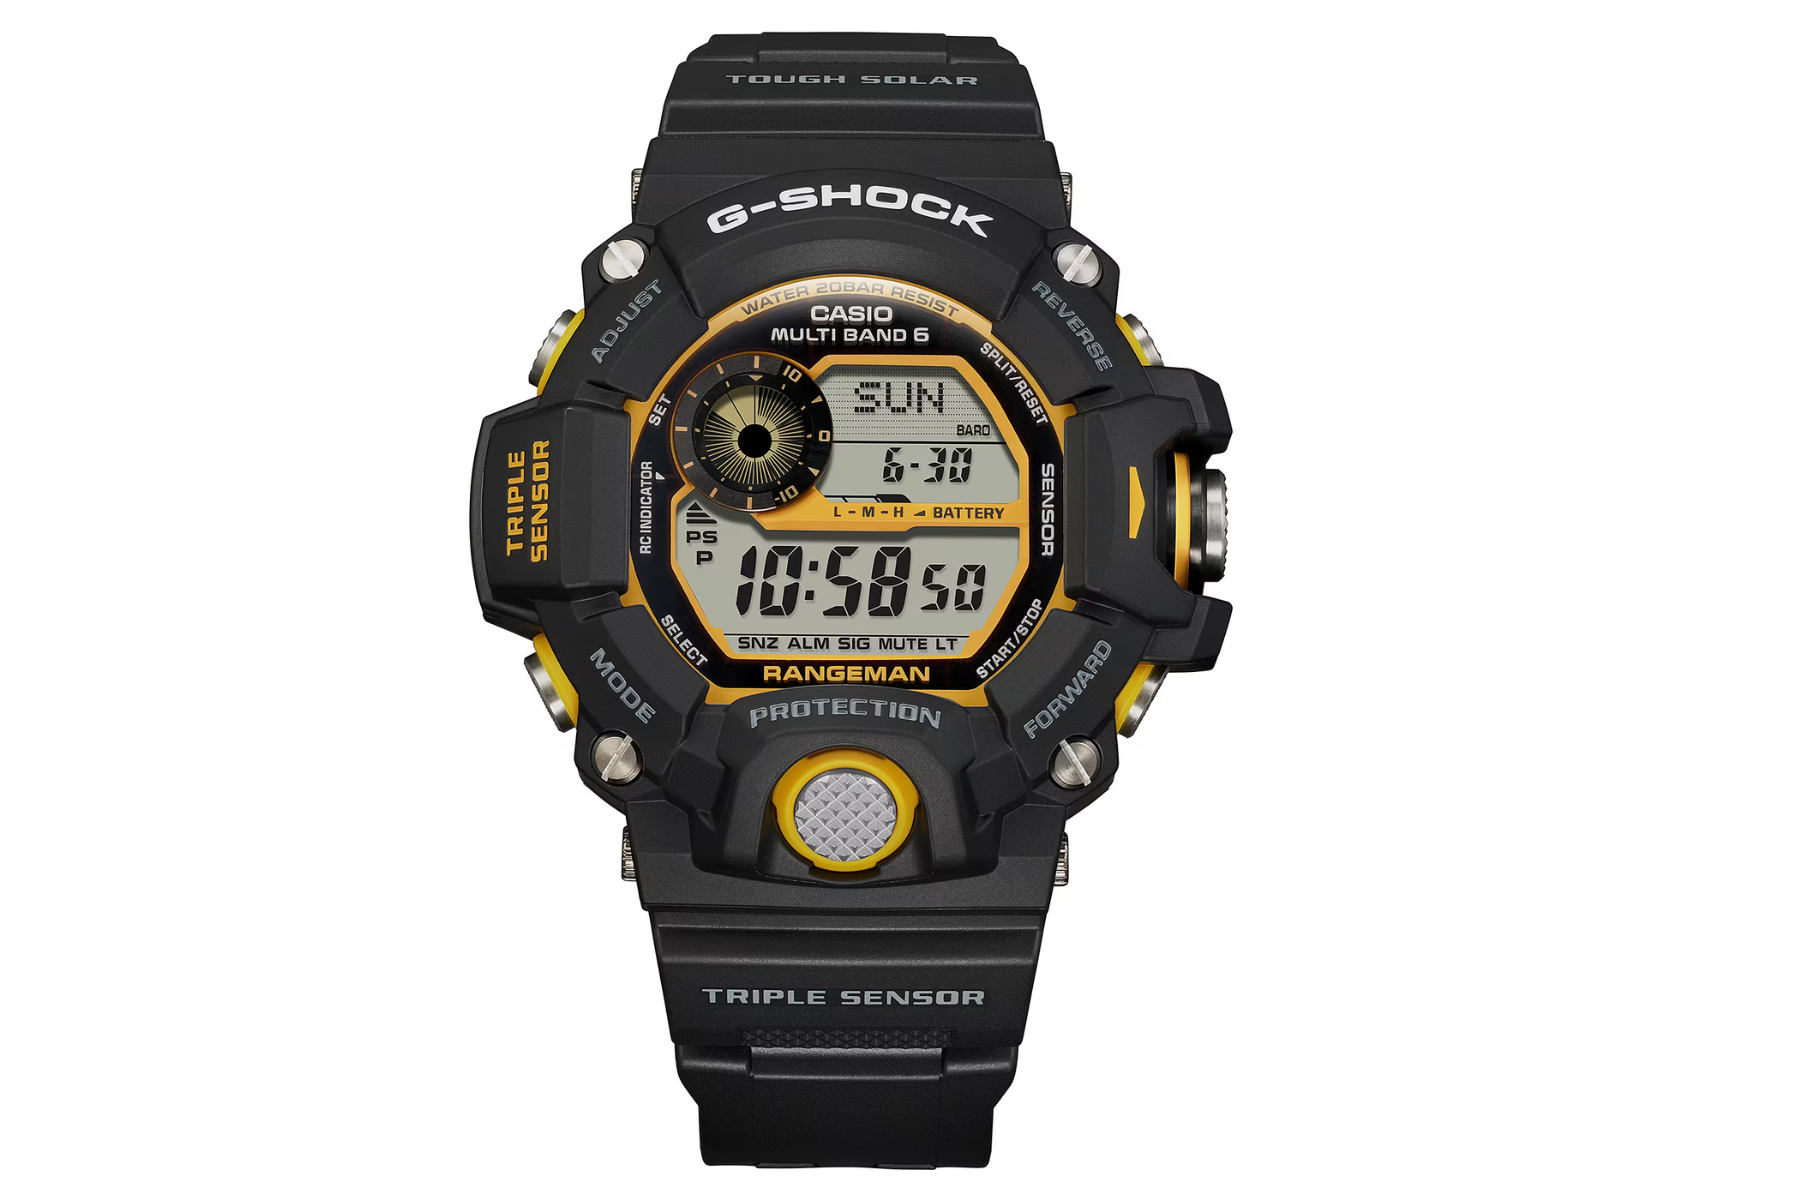 Pánske náramkové hodinky Casio G-SHOCK GW-9400Y-1ER odolne